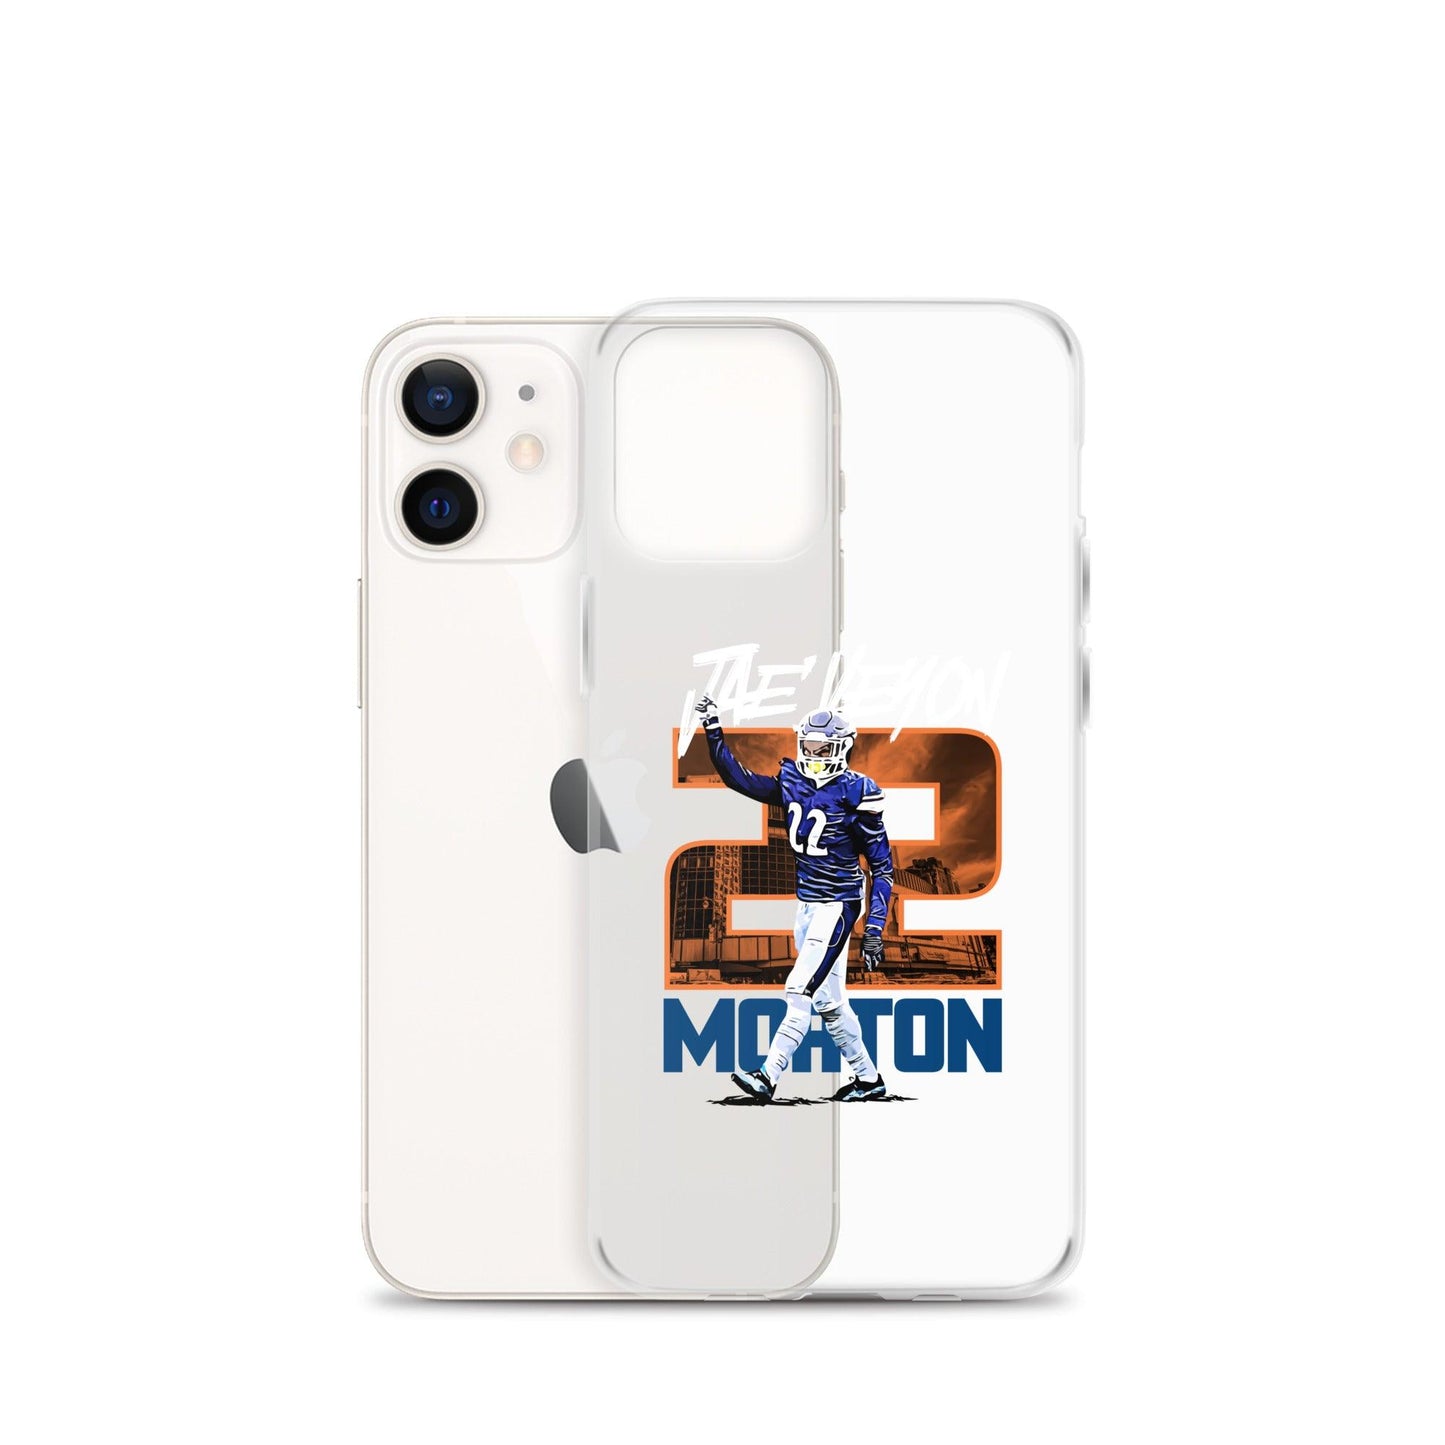 Jae’Veyon Morton "Gameday" iPhone Case - Fan Arch